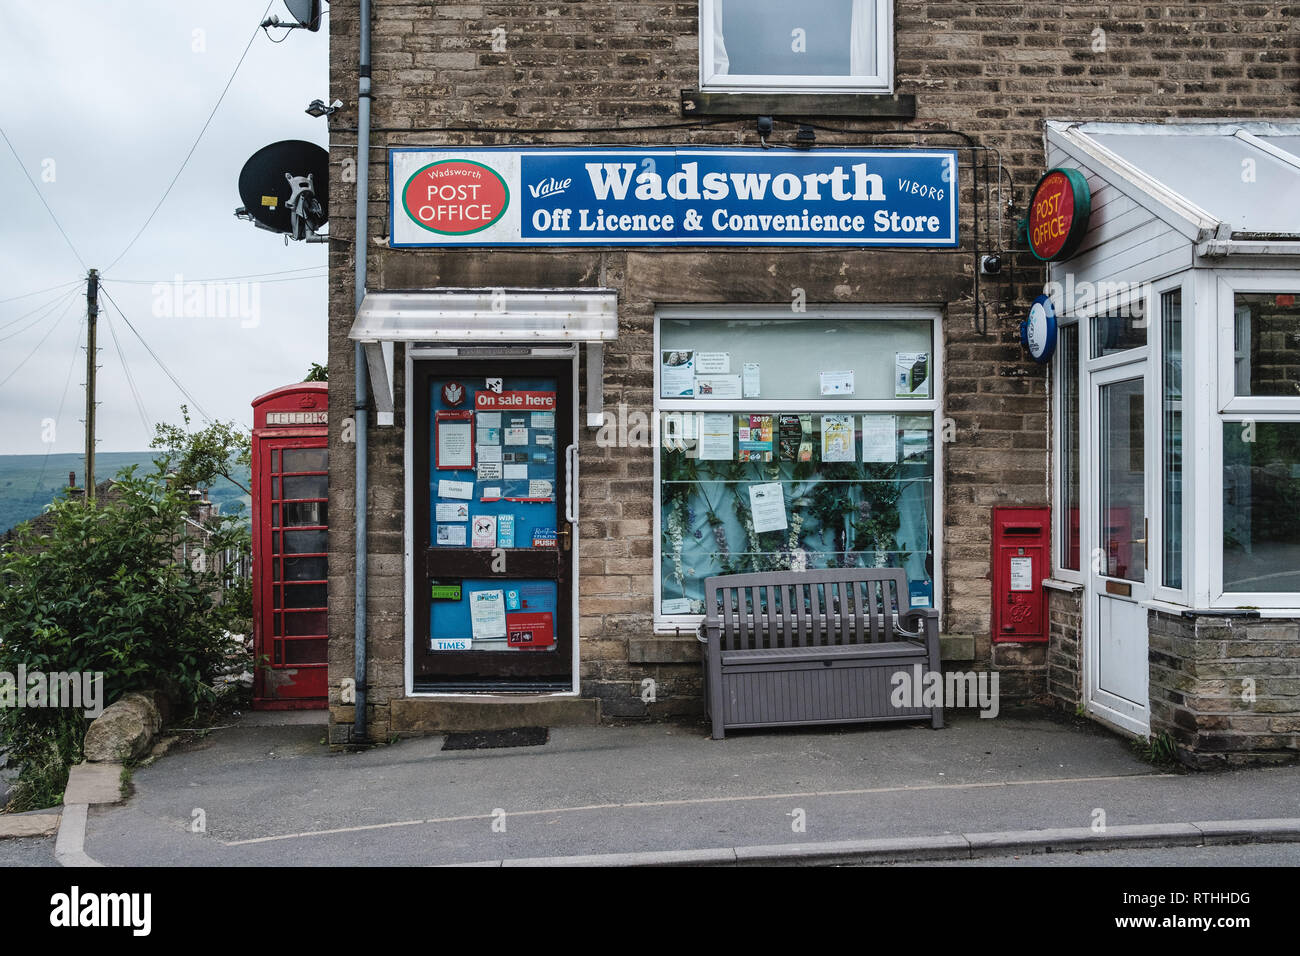 Un corner shop servant la communauté locale dans la région de Wadsworth, au-dessus de Hebden Bridge. Banque D'Images